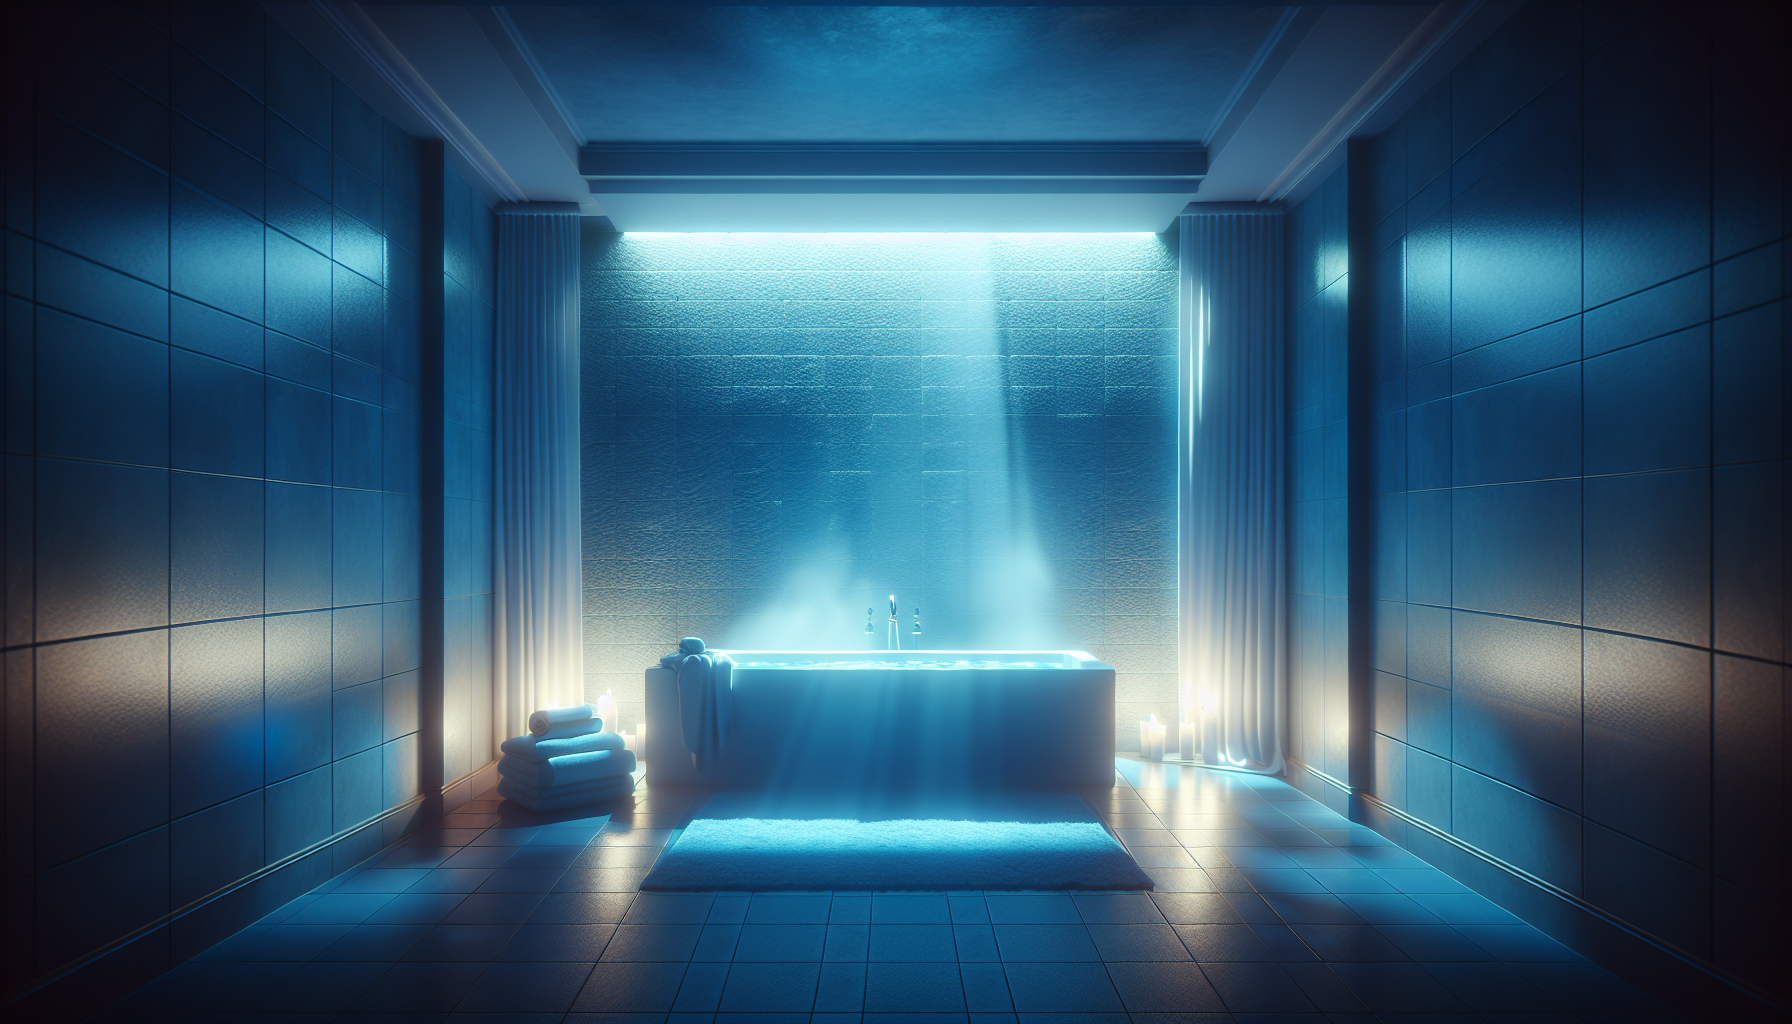 Stimmungsvolle Beleuchtung in einem blauen Badezimmer